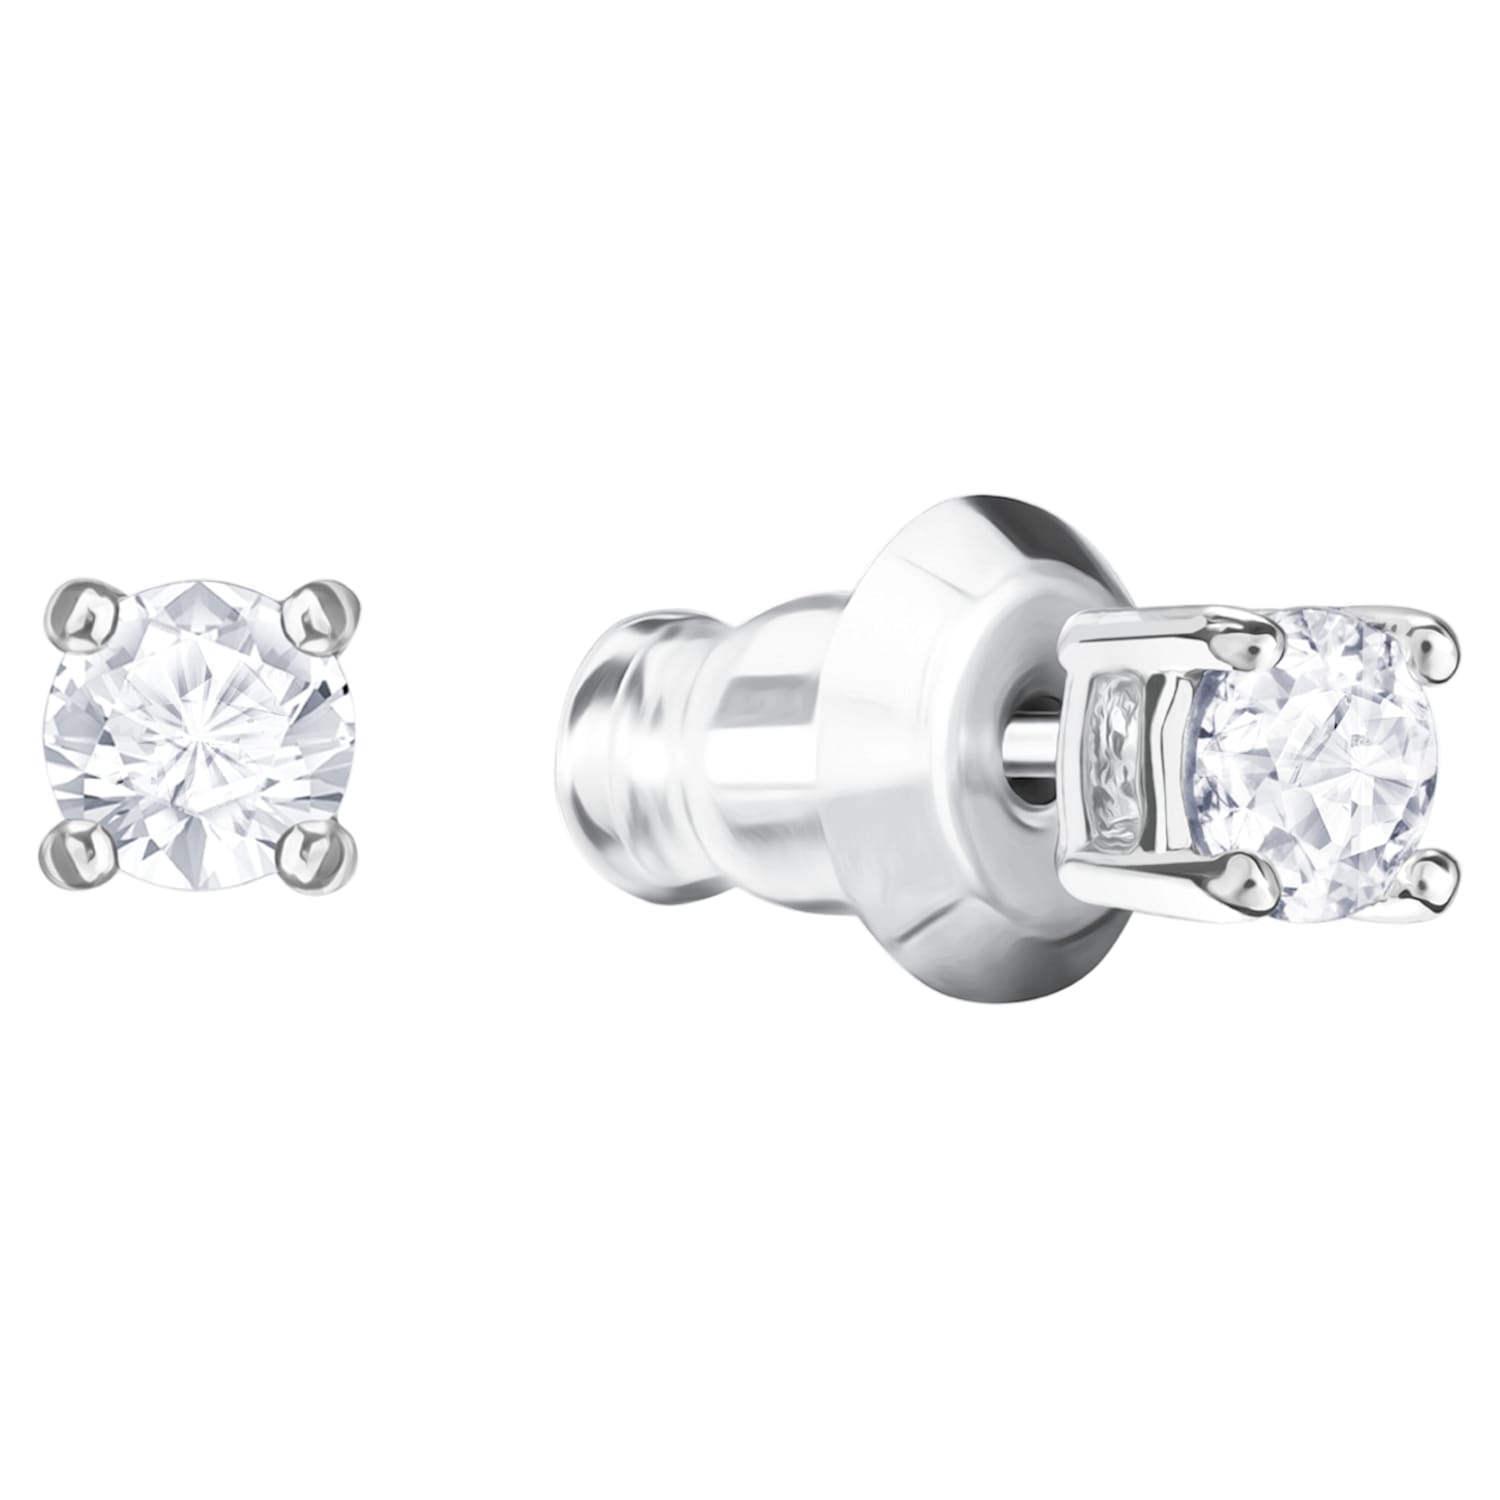 Los pendientes Swarovski mejor valorados en Amazon: parecen dos diamantes auténticos